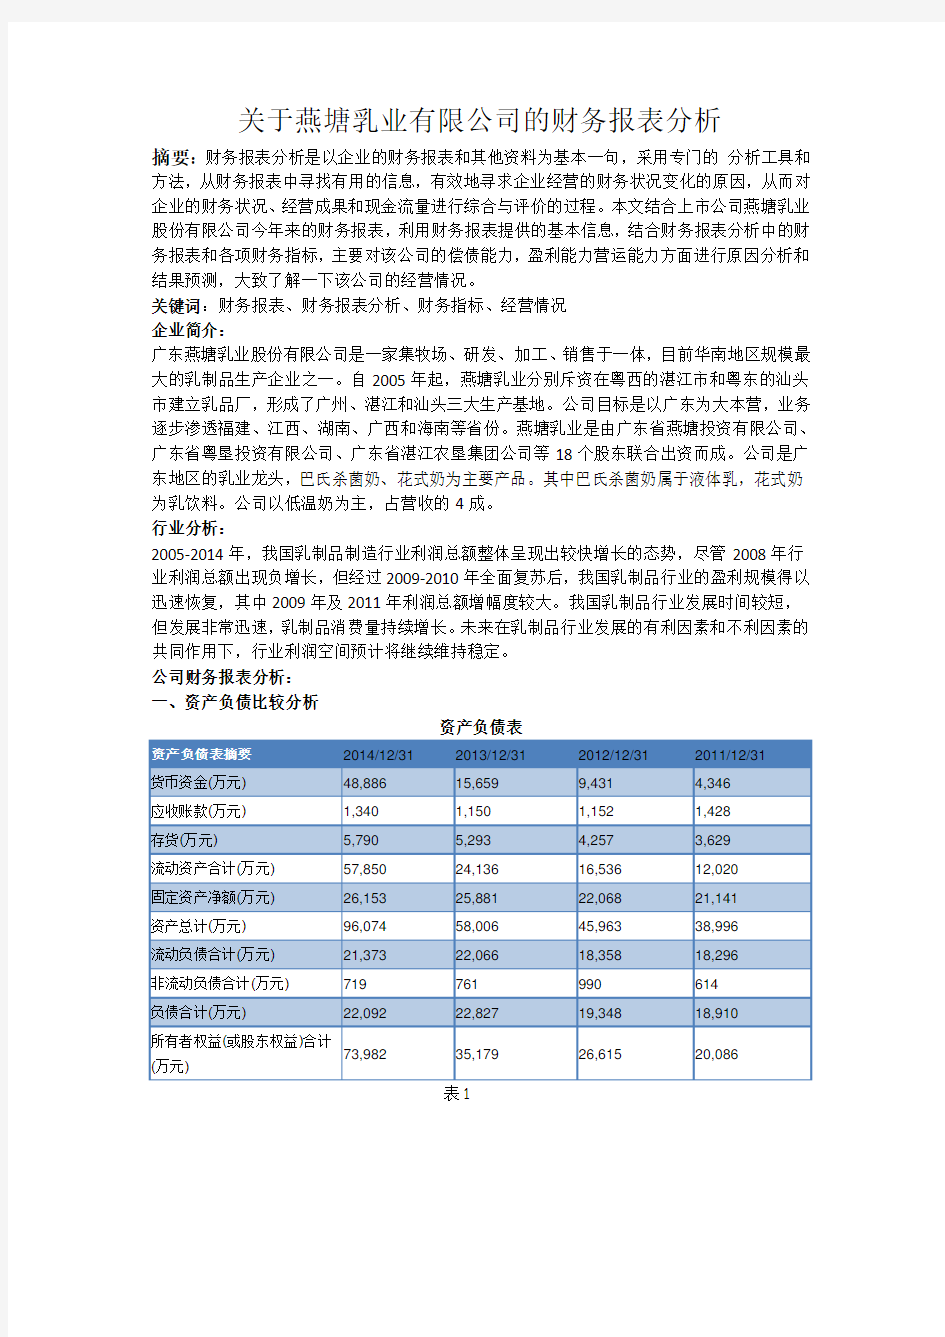 关于燕塘乳业有限公司的财务报表分析